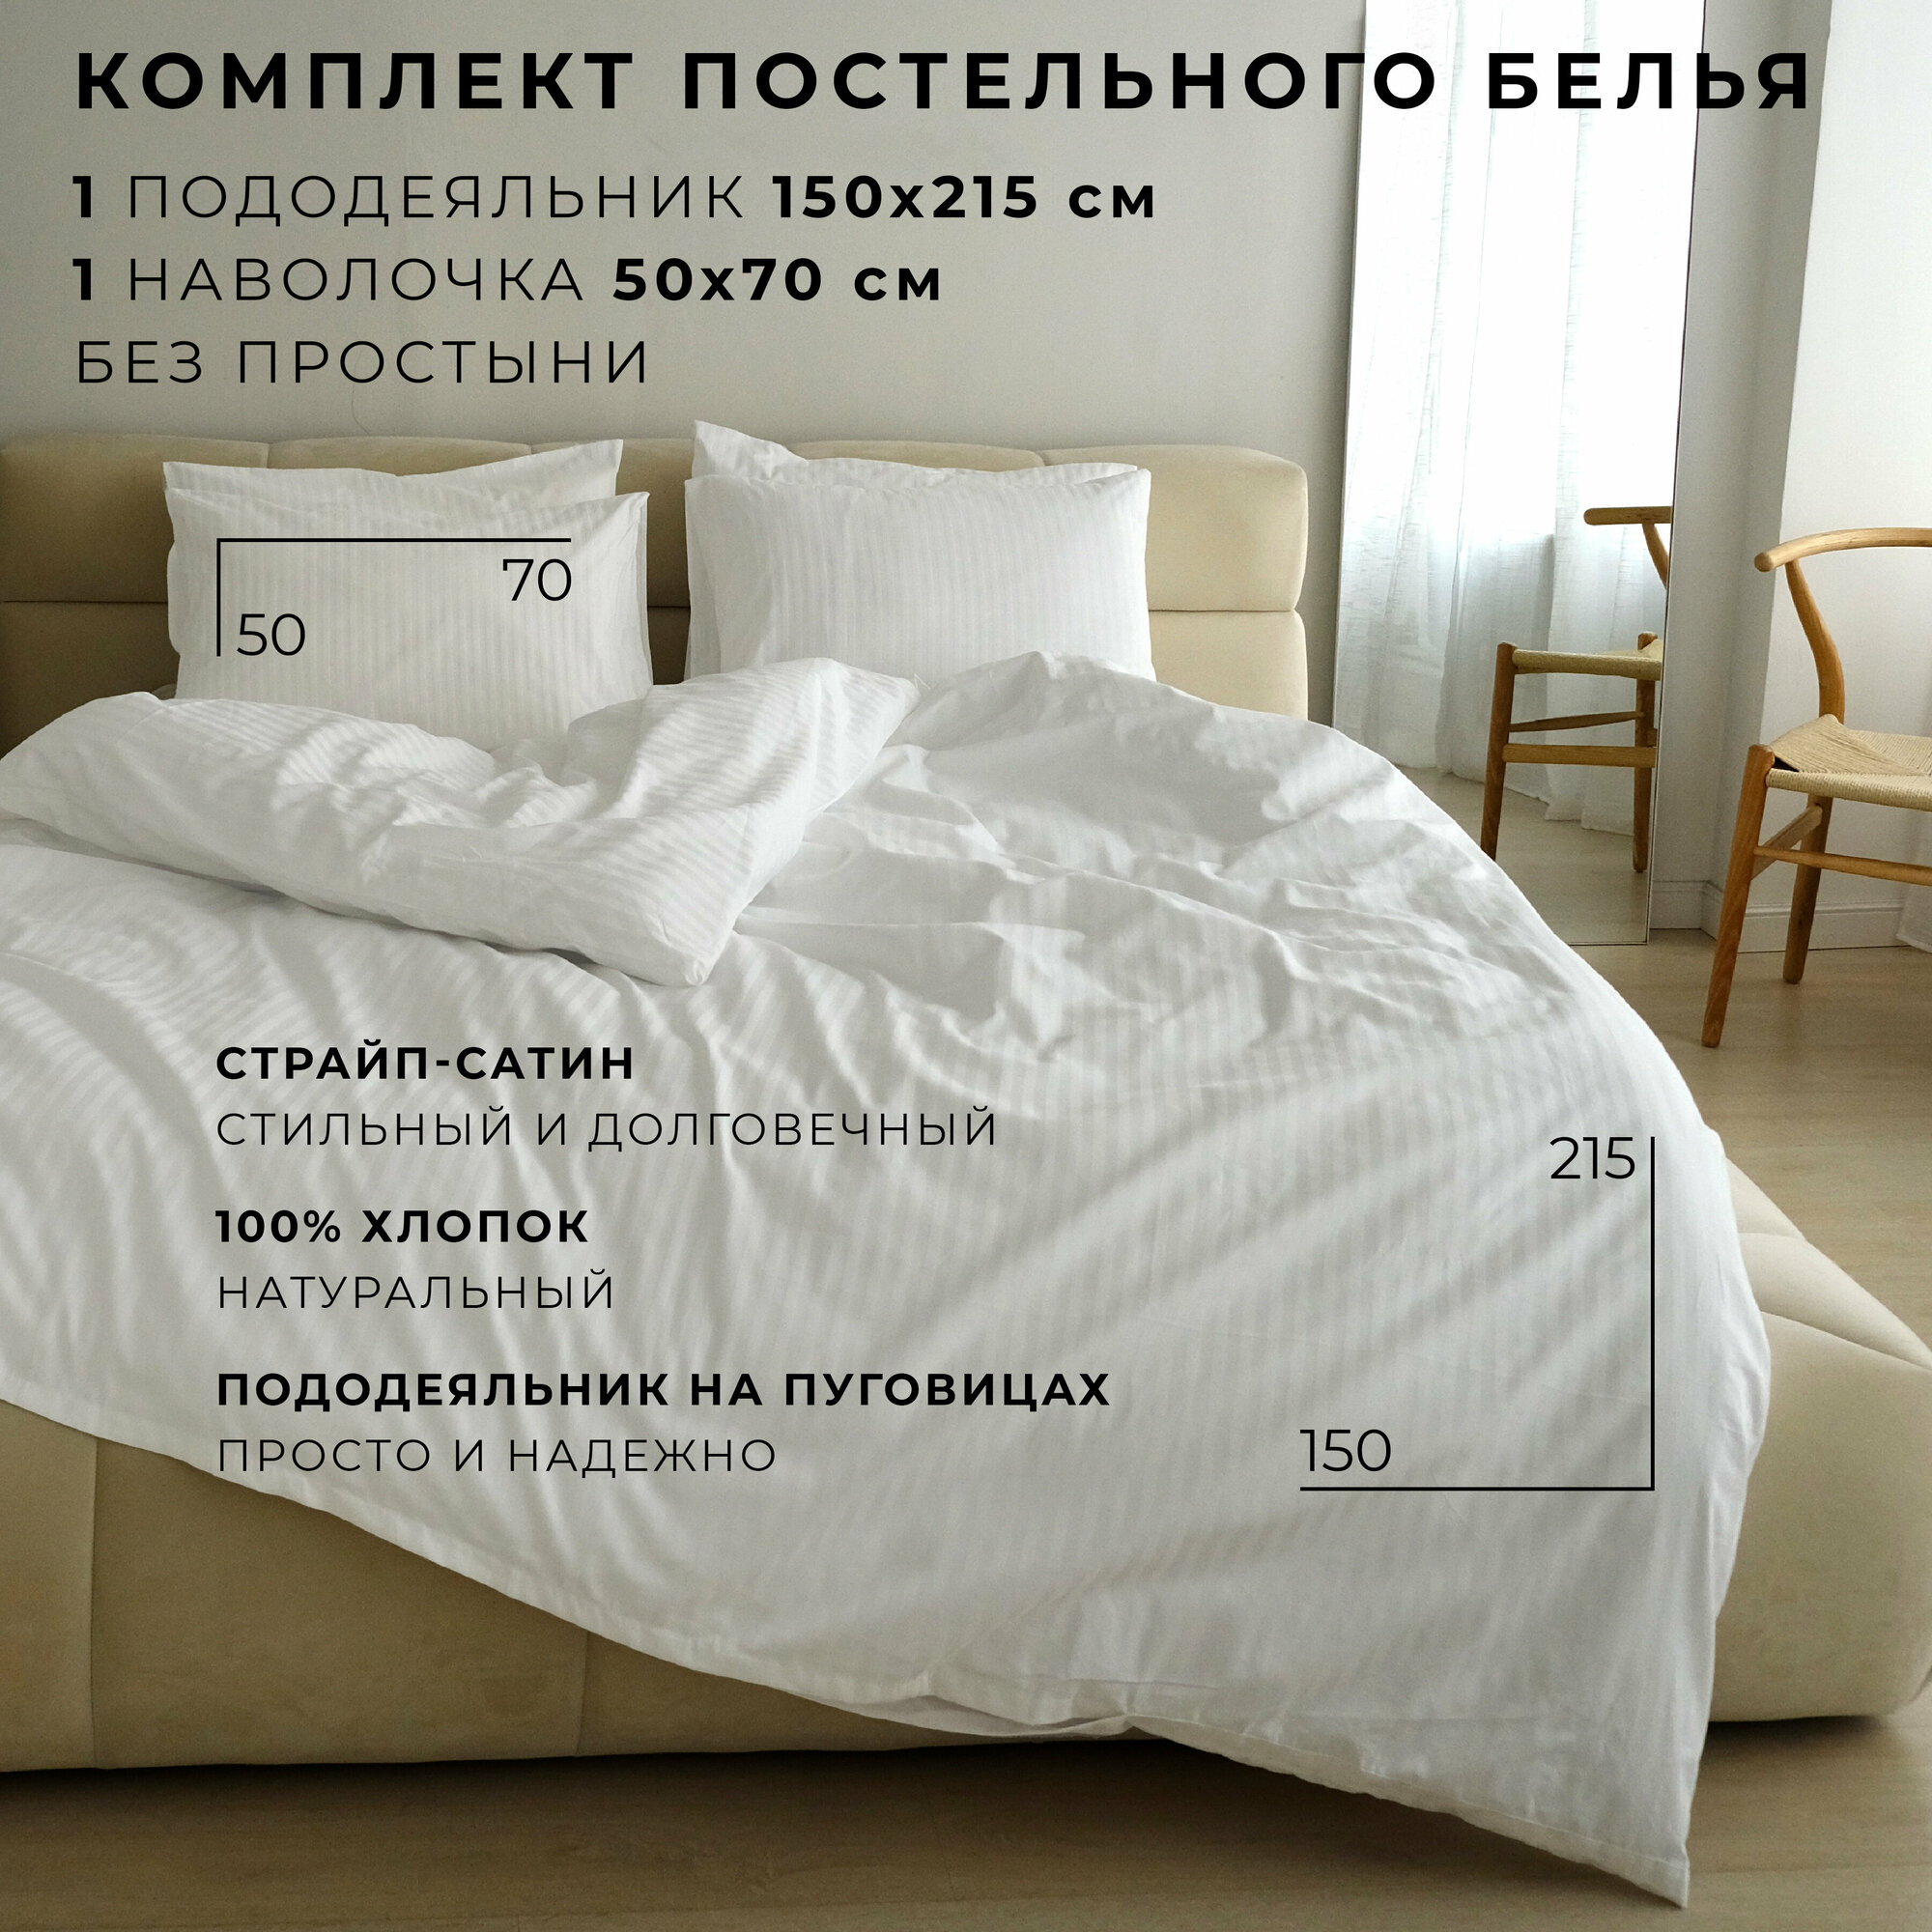 Комплект постельного белья SCANDIBOO Страйп-Сатин 1.5 спальный белый, пододеяльник 150х215 см, 1 наволочка 50х70 см , без простыни, хлопок 100%